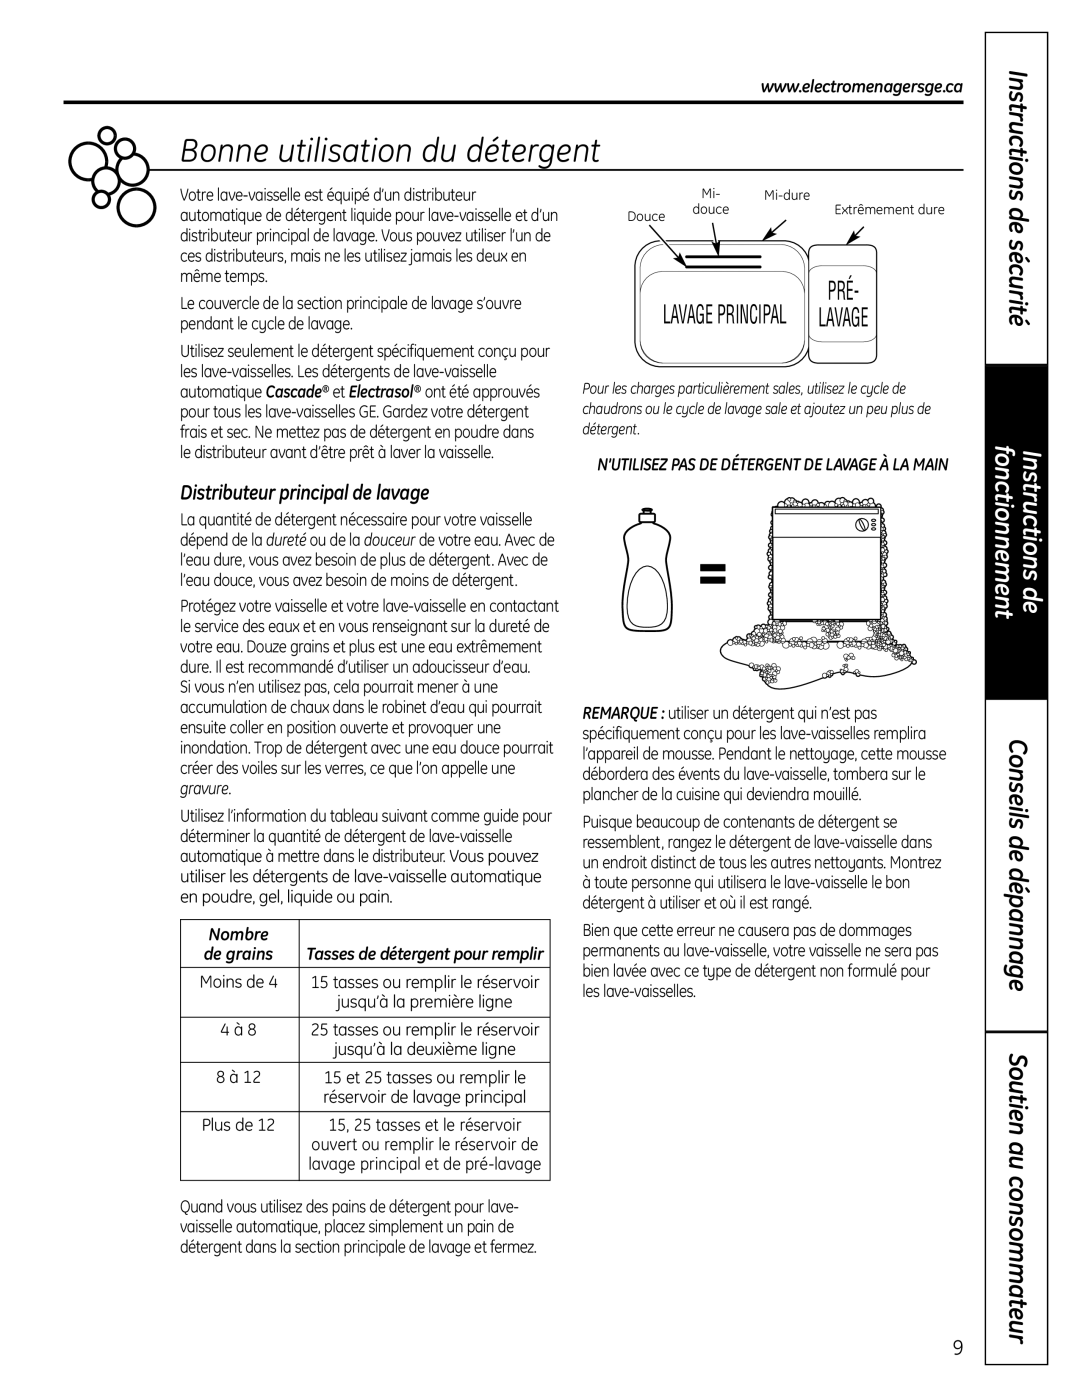 GE PDW 9800 manual Bonne utilisation du détergent, de sécurité, Conseils de dépannage Soutien au consommateur, Instructions 